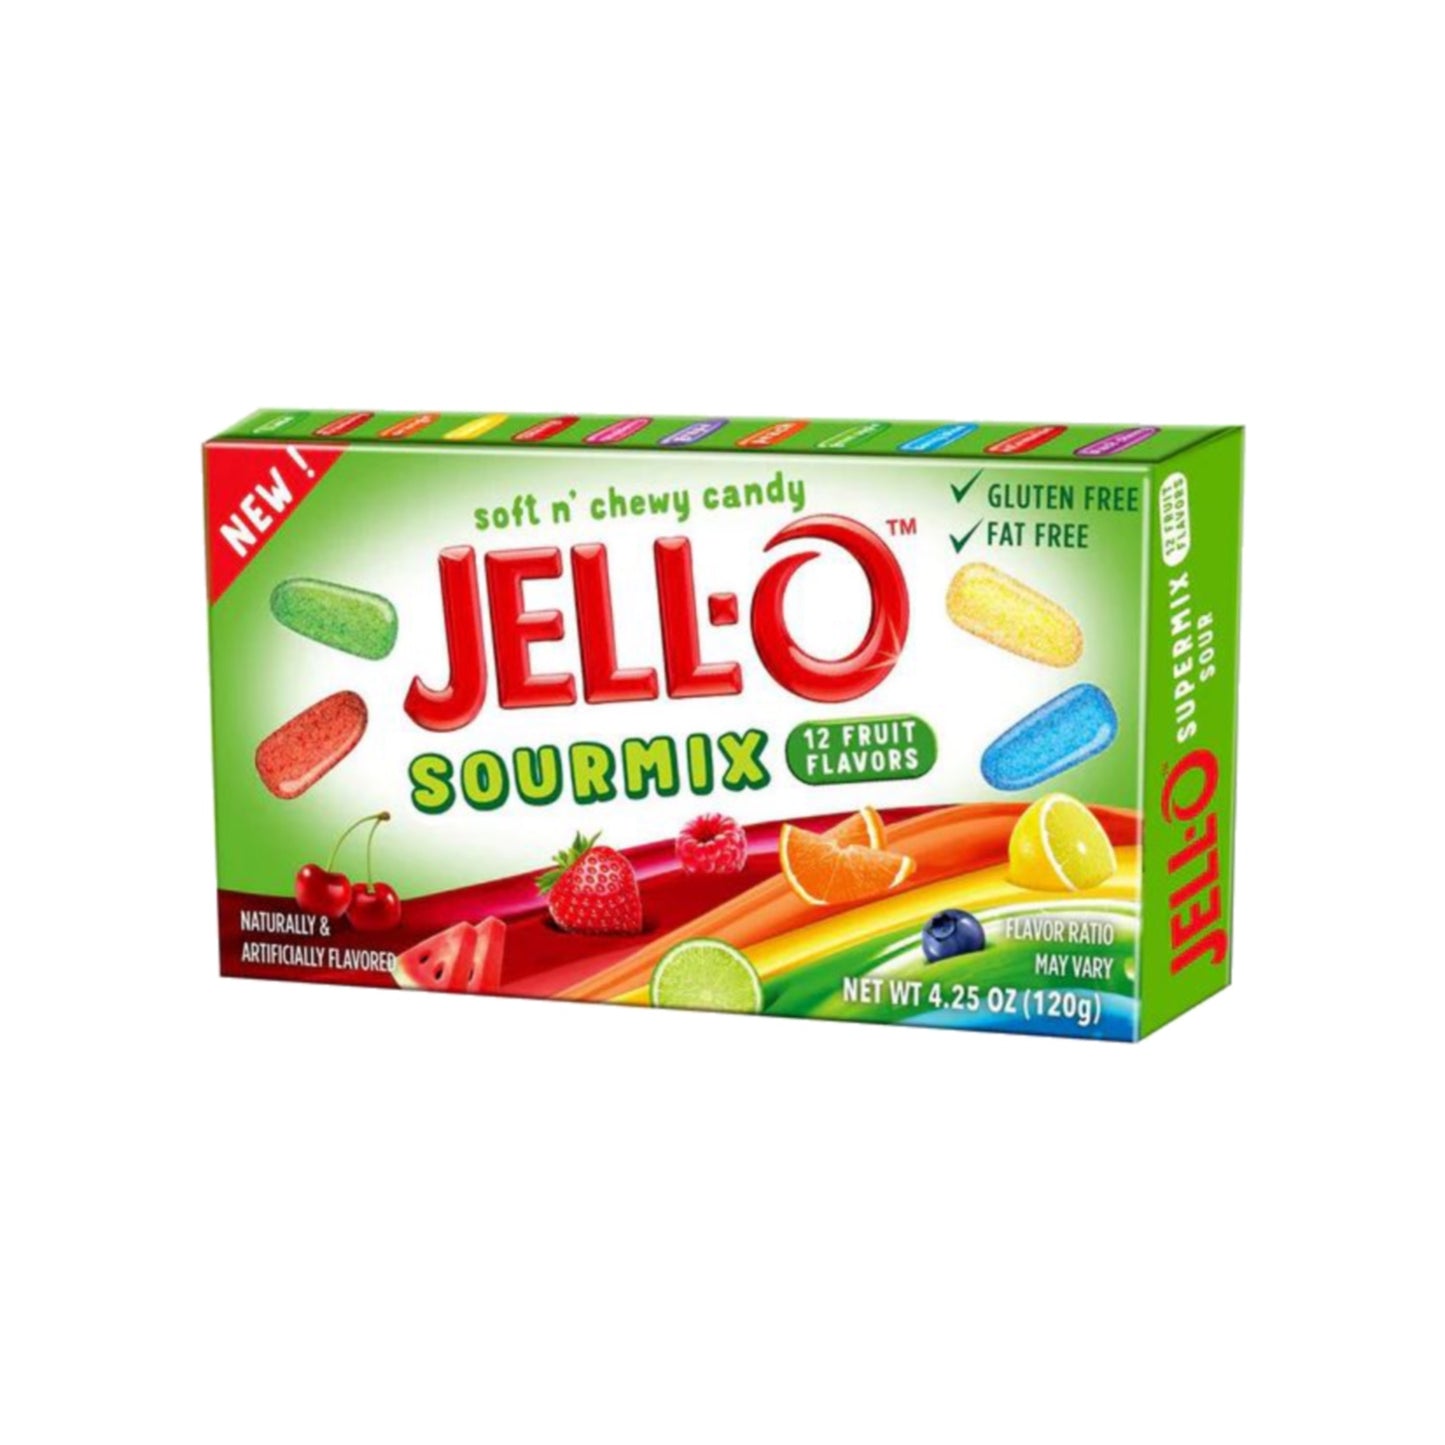 Jello Super Mix Sour Theatre Box